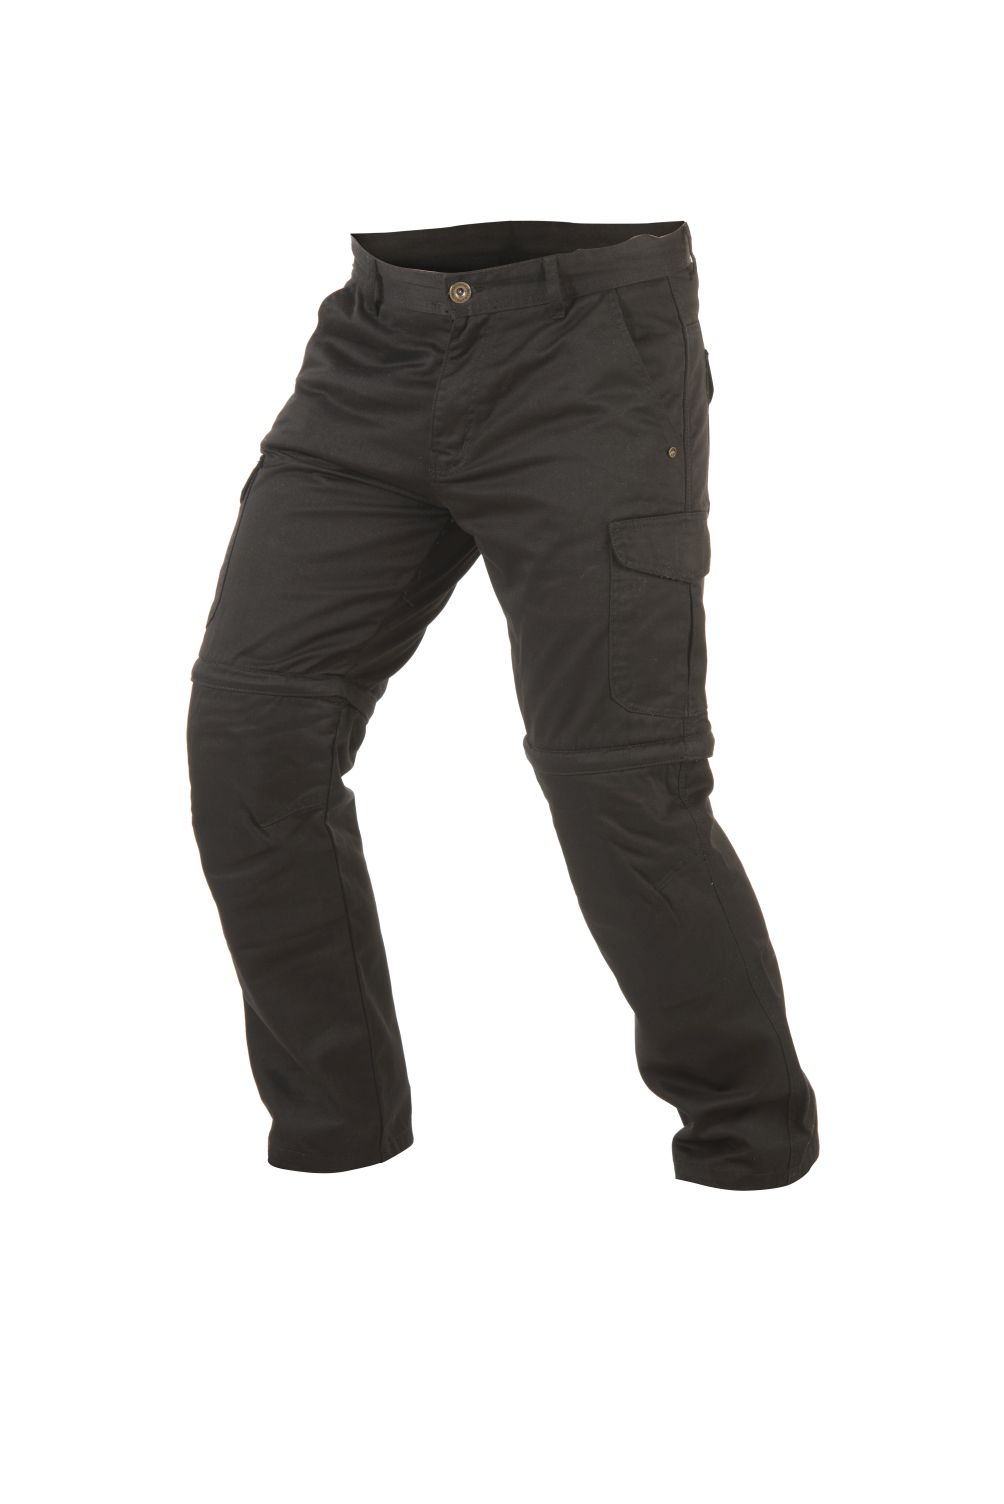 Dual Pants (2in1) - T1864BLACK - 30